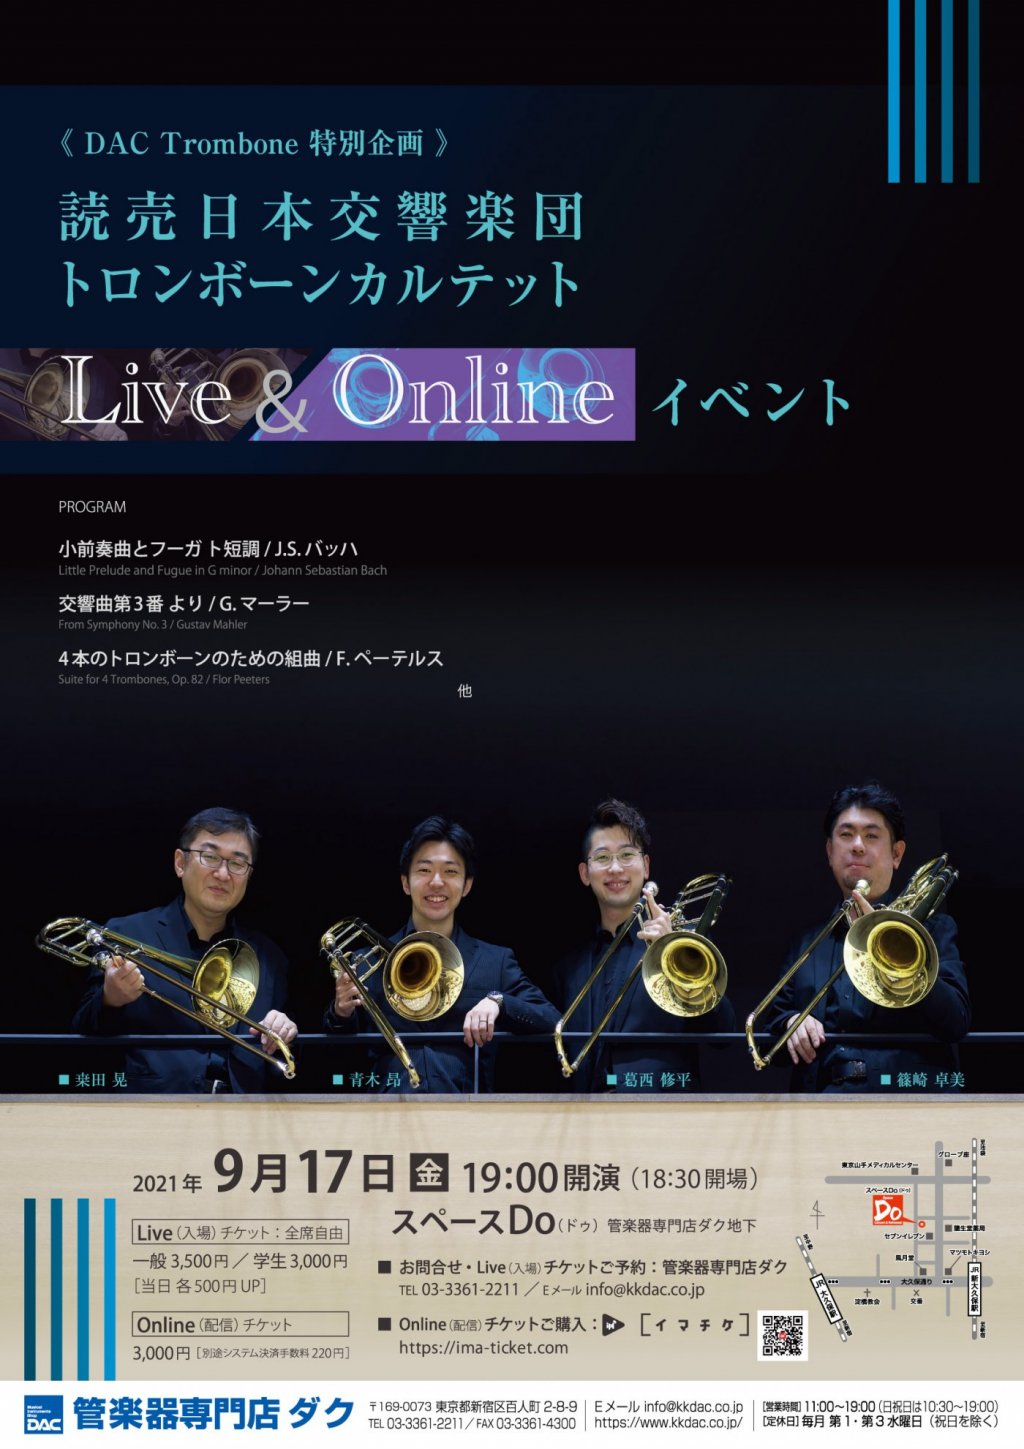 【ご来場チケットは完売しております】《DAC Trombone 特別企画》読売日本交響楽団トロンボーンカルテット Live＆Onlineイベント